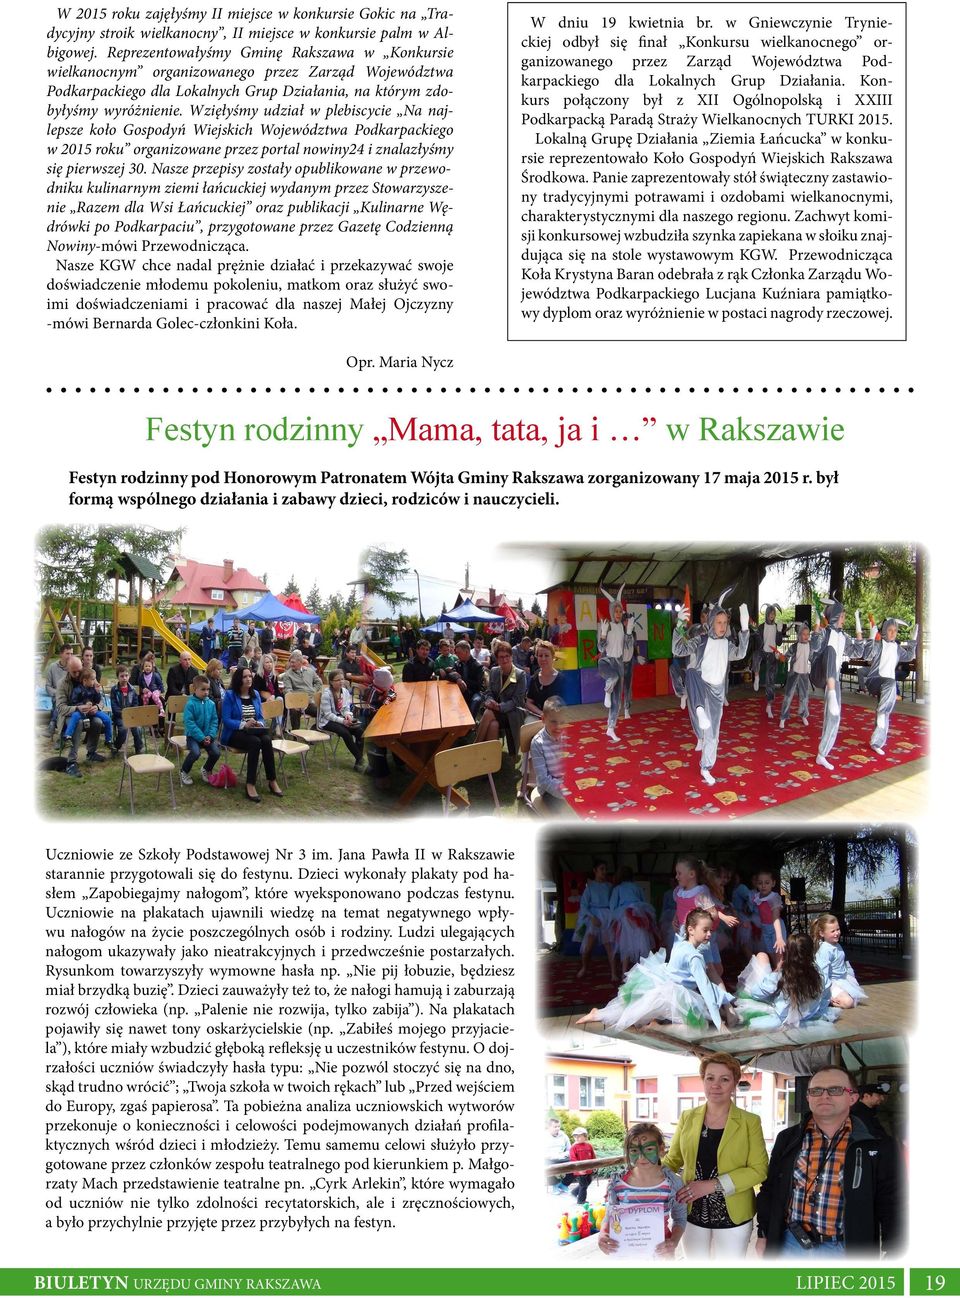 Wzięłyśmy udział w plebiscycie Na najlepsze koło Gospodyń Wiejskich Województwa Podkarpackiego w 2015 roku organizowane przez portal nowiny24 i znalazłyśmy się pierwszej 30.